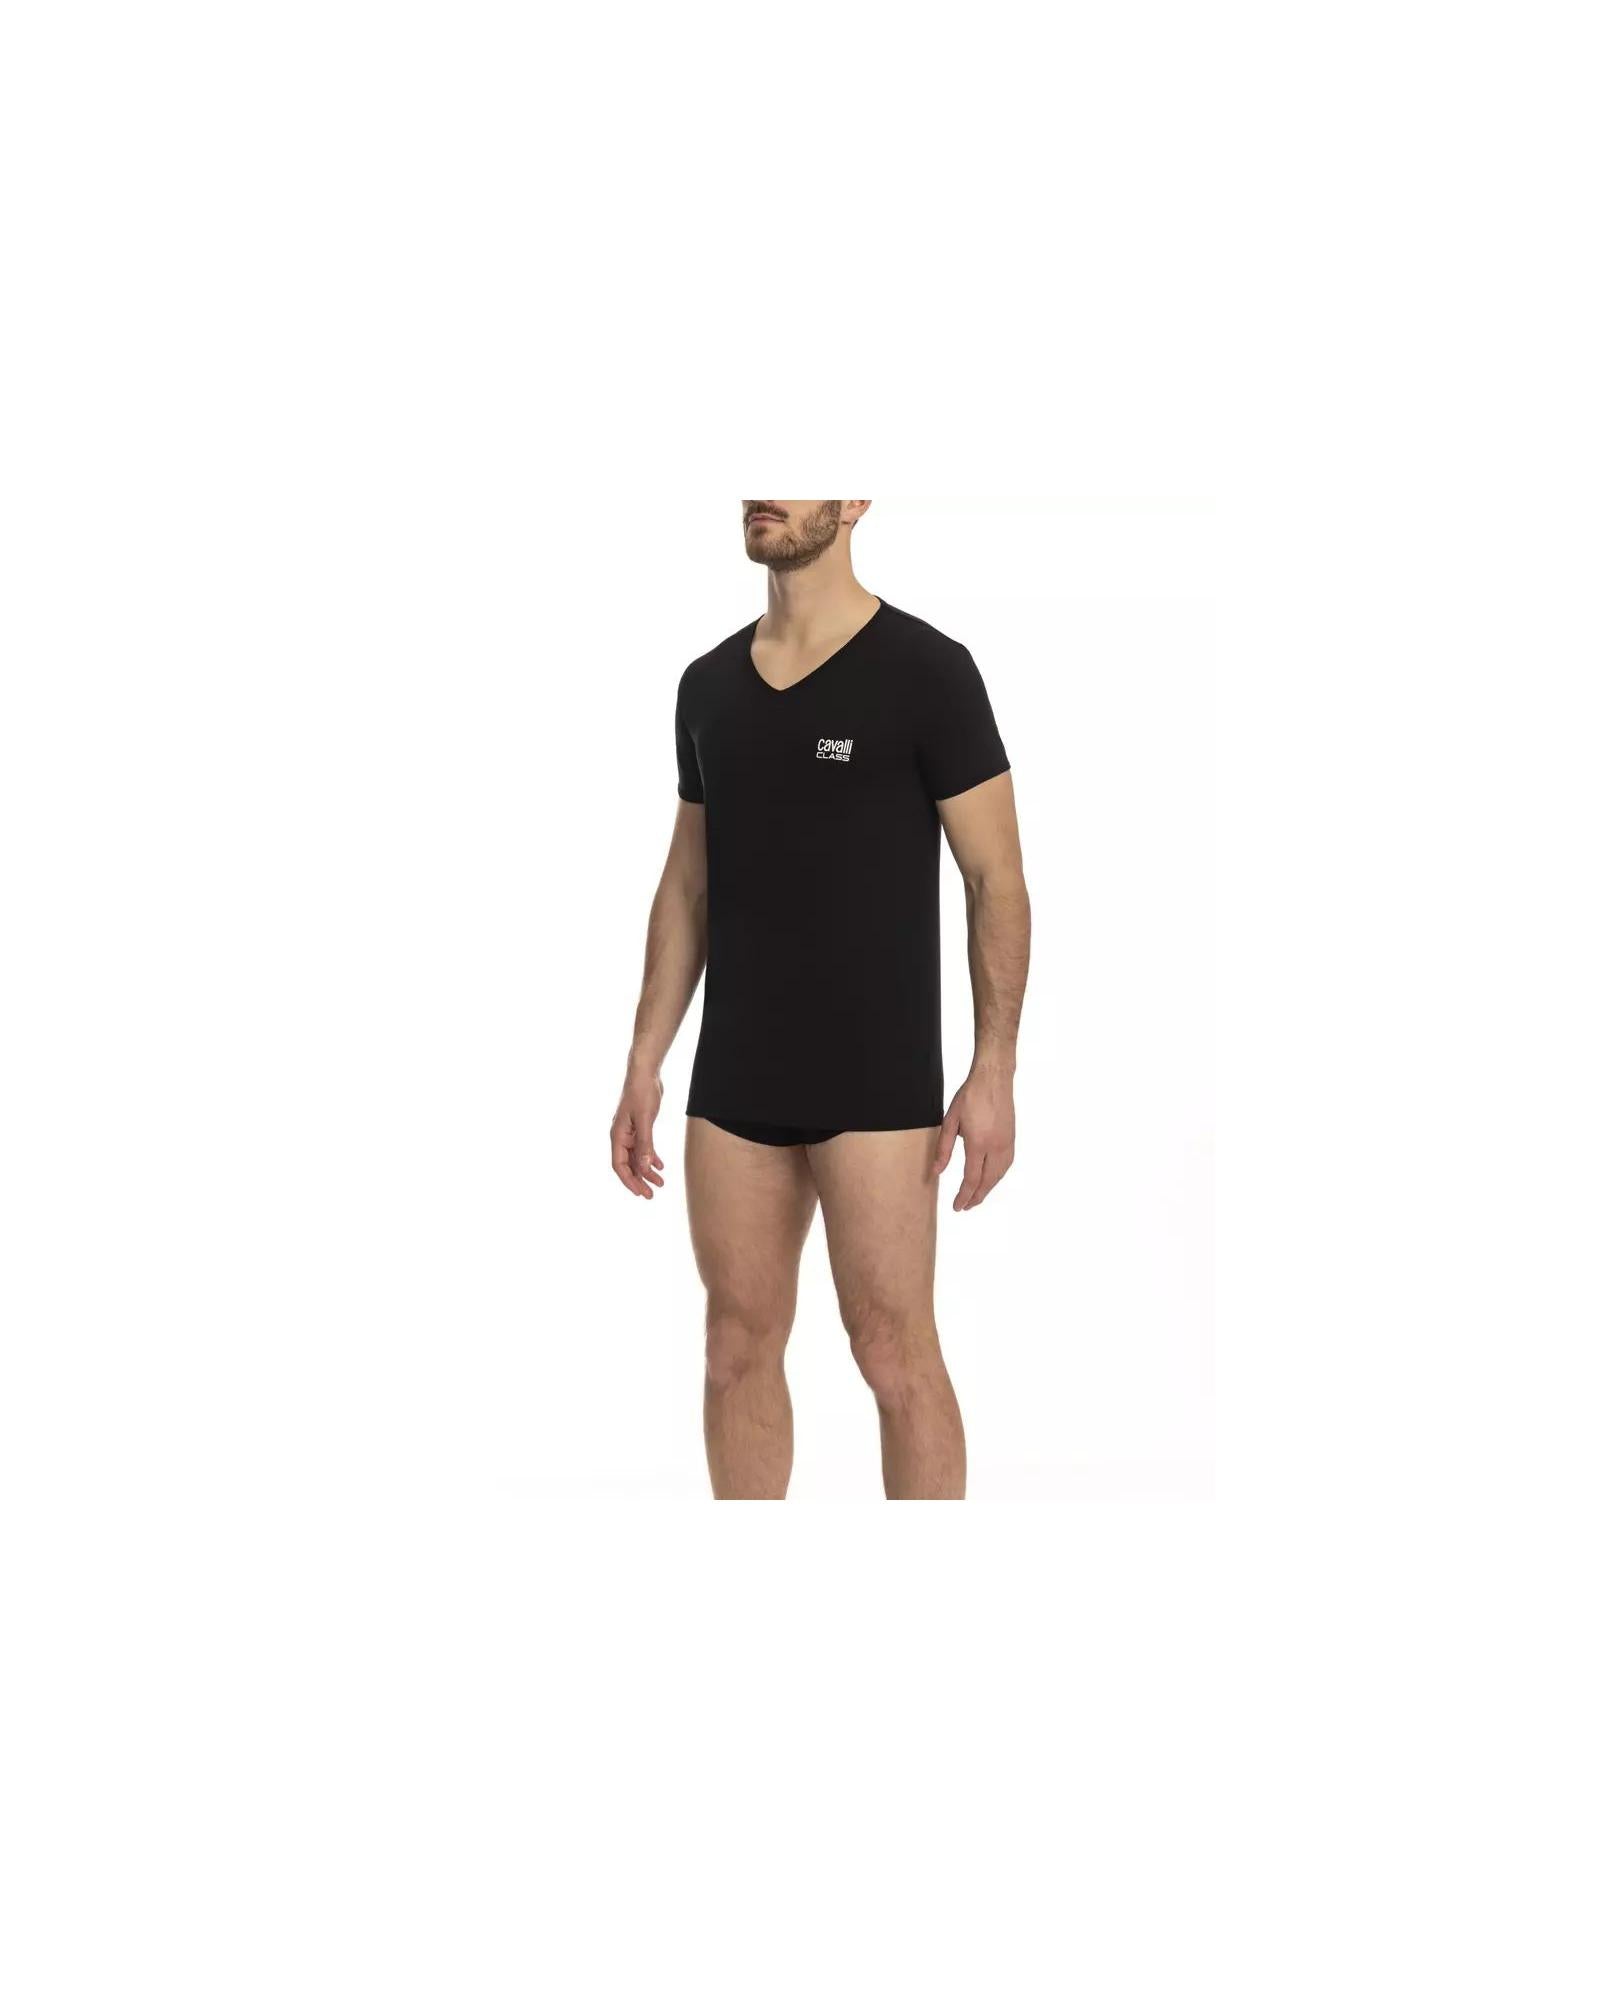 Men's Black Cotton T-Shirt - 2XL